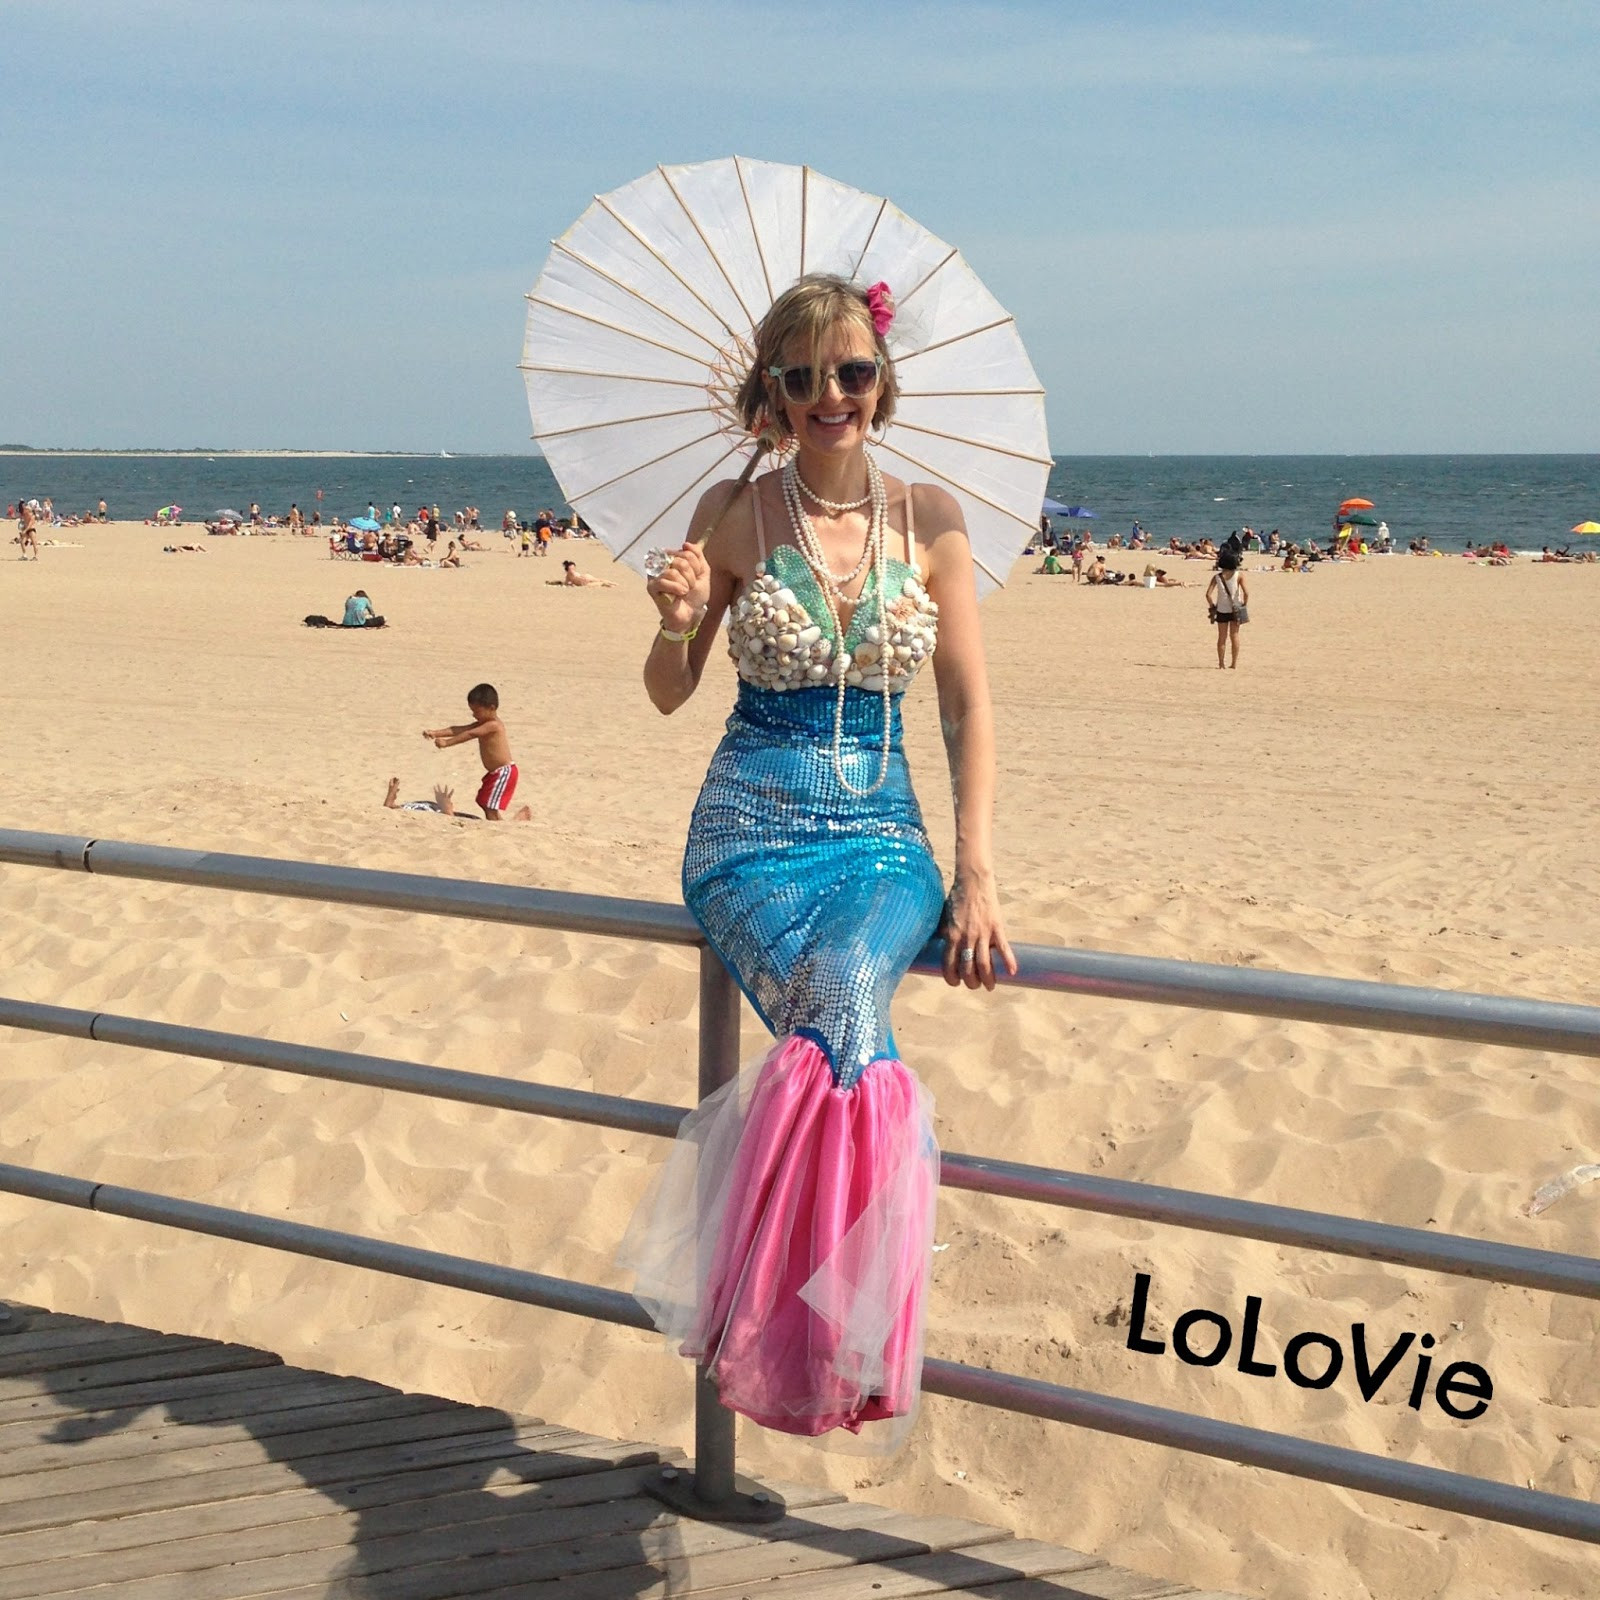 Best ideas about Mermaid Costume DIY
. Save or Pin LoLovie Mermaid dress DIY Now.